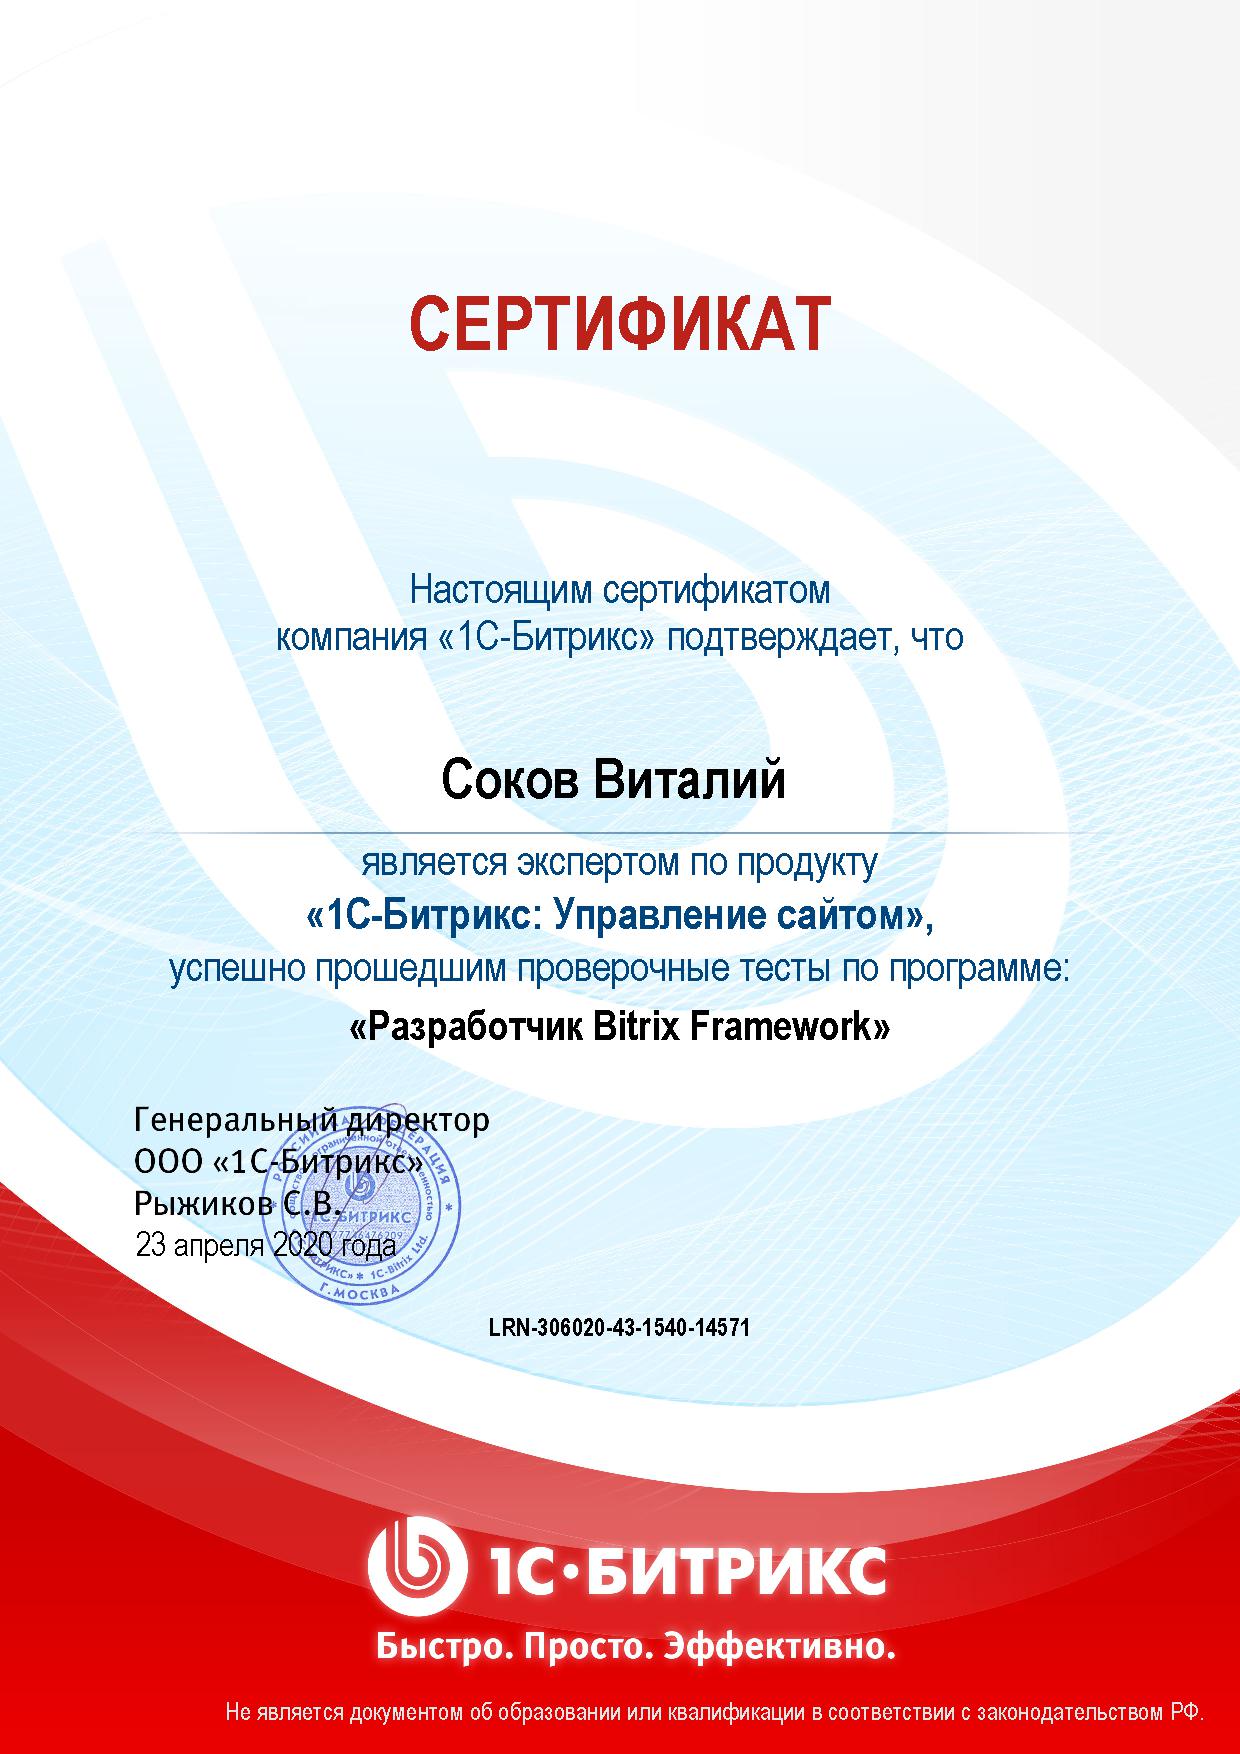 Сертификат Соков В.М., курс "1С-Битрикс: Управление сайтом. Разработчик Bitrix Framework"